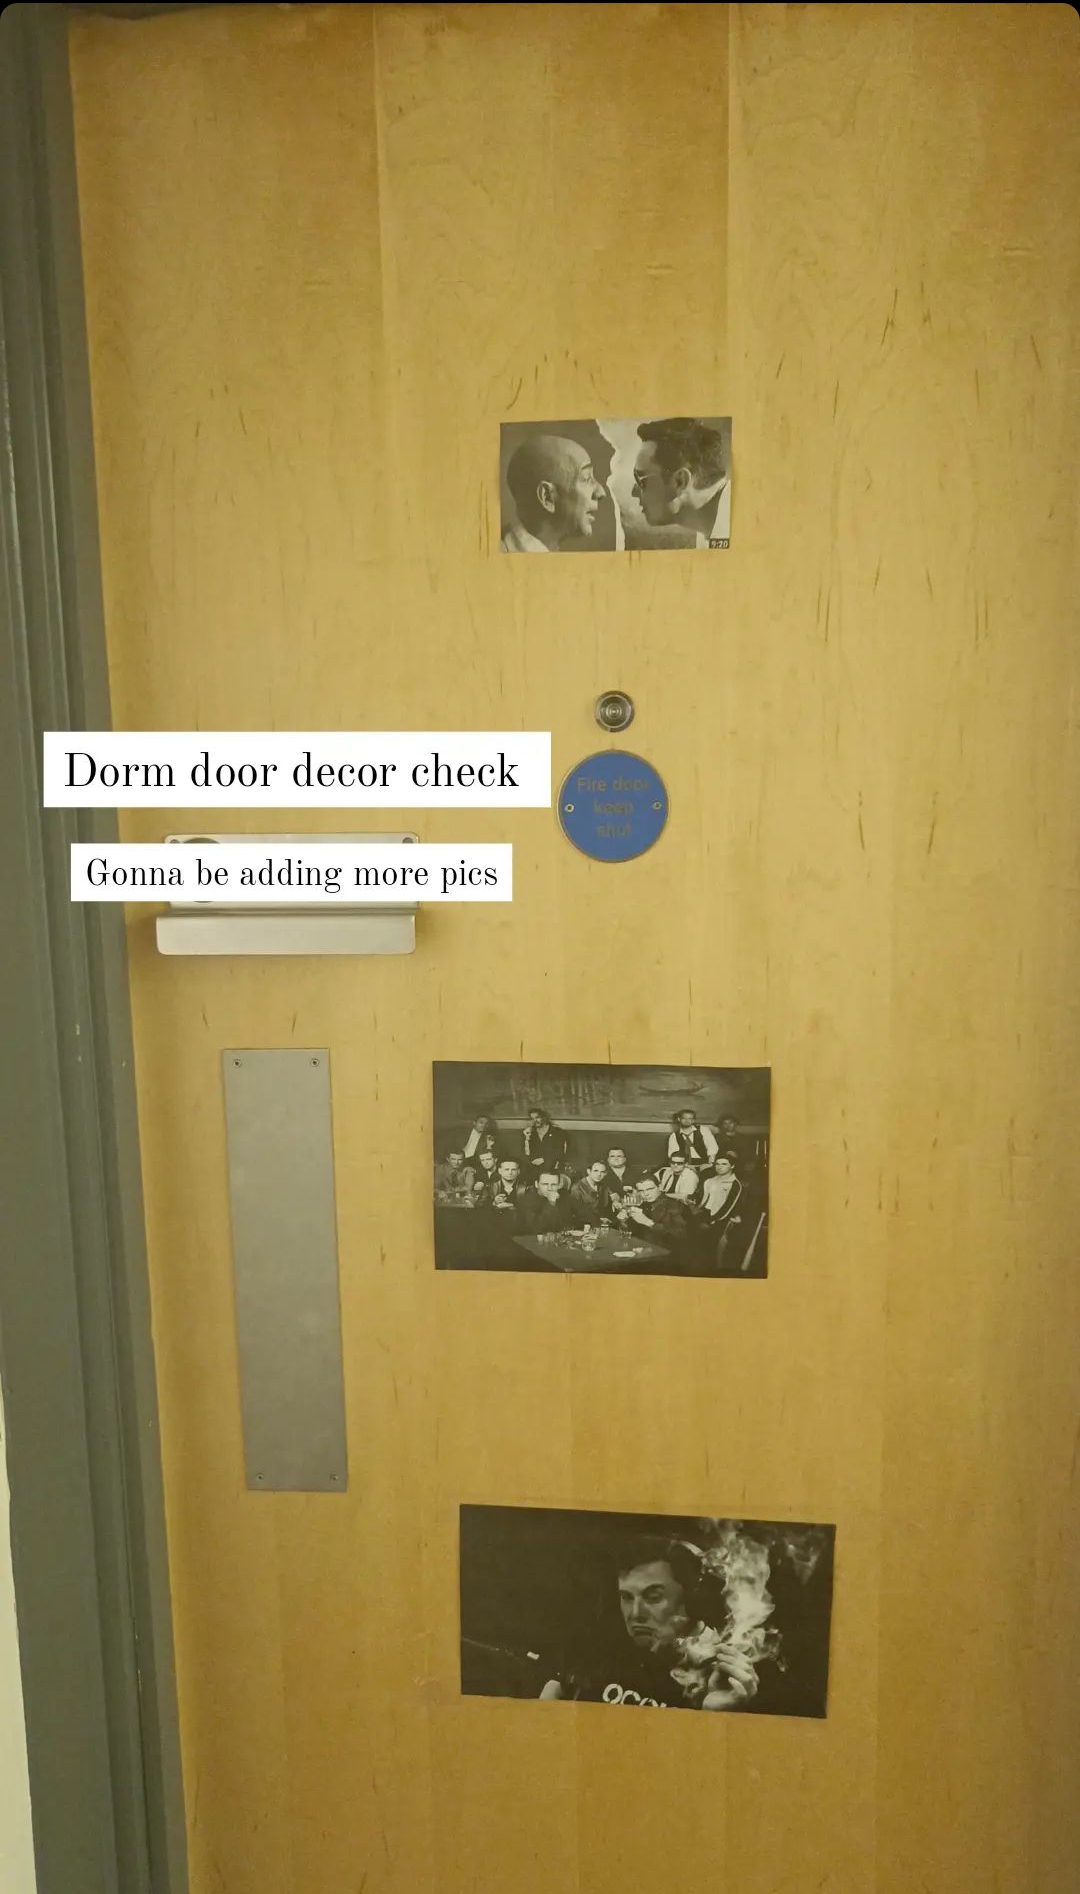 My dorm room door